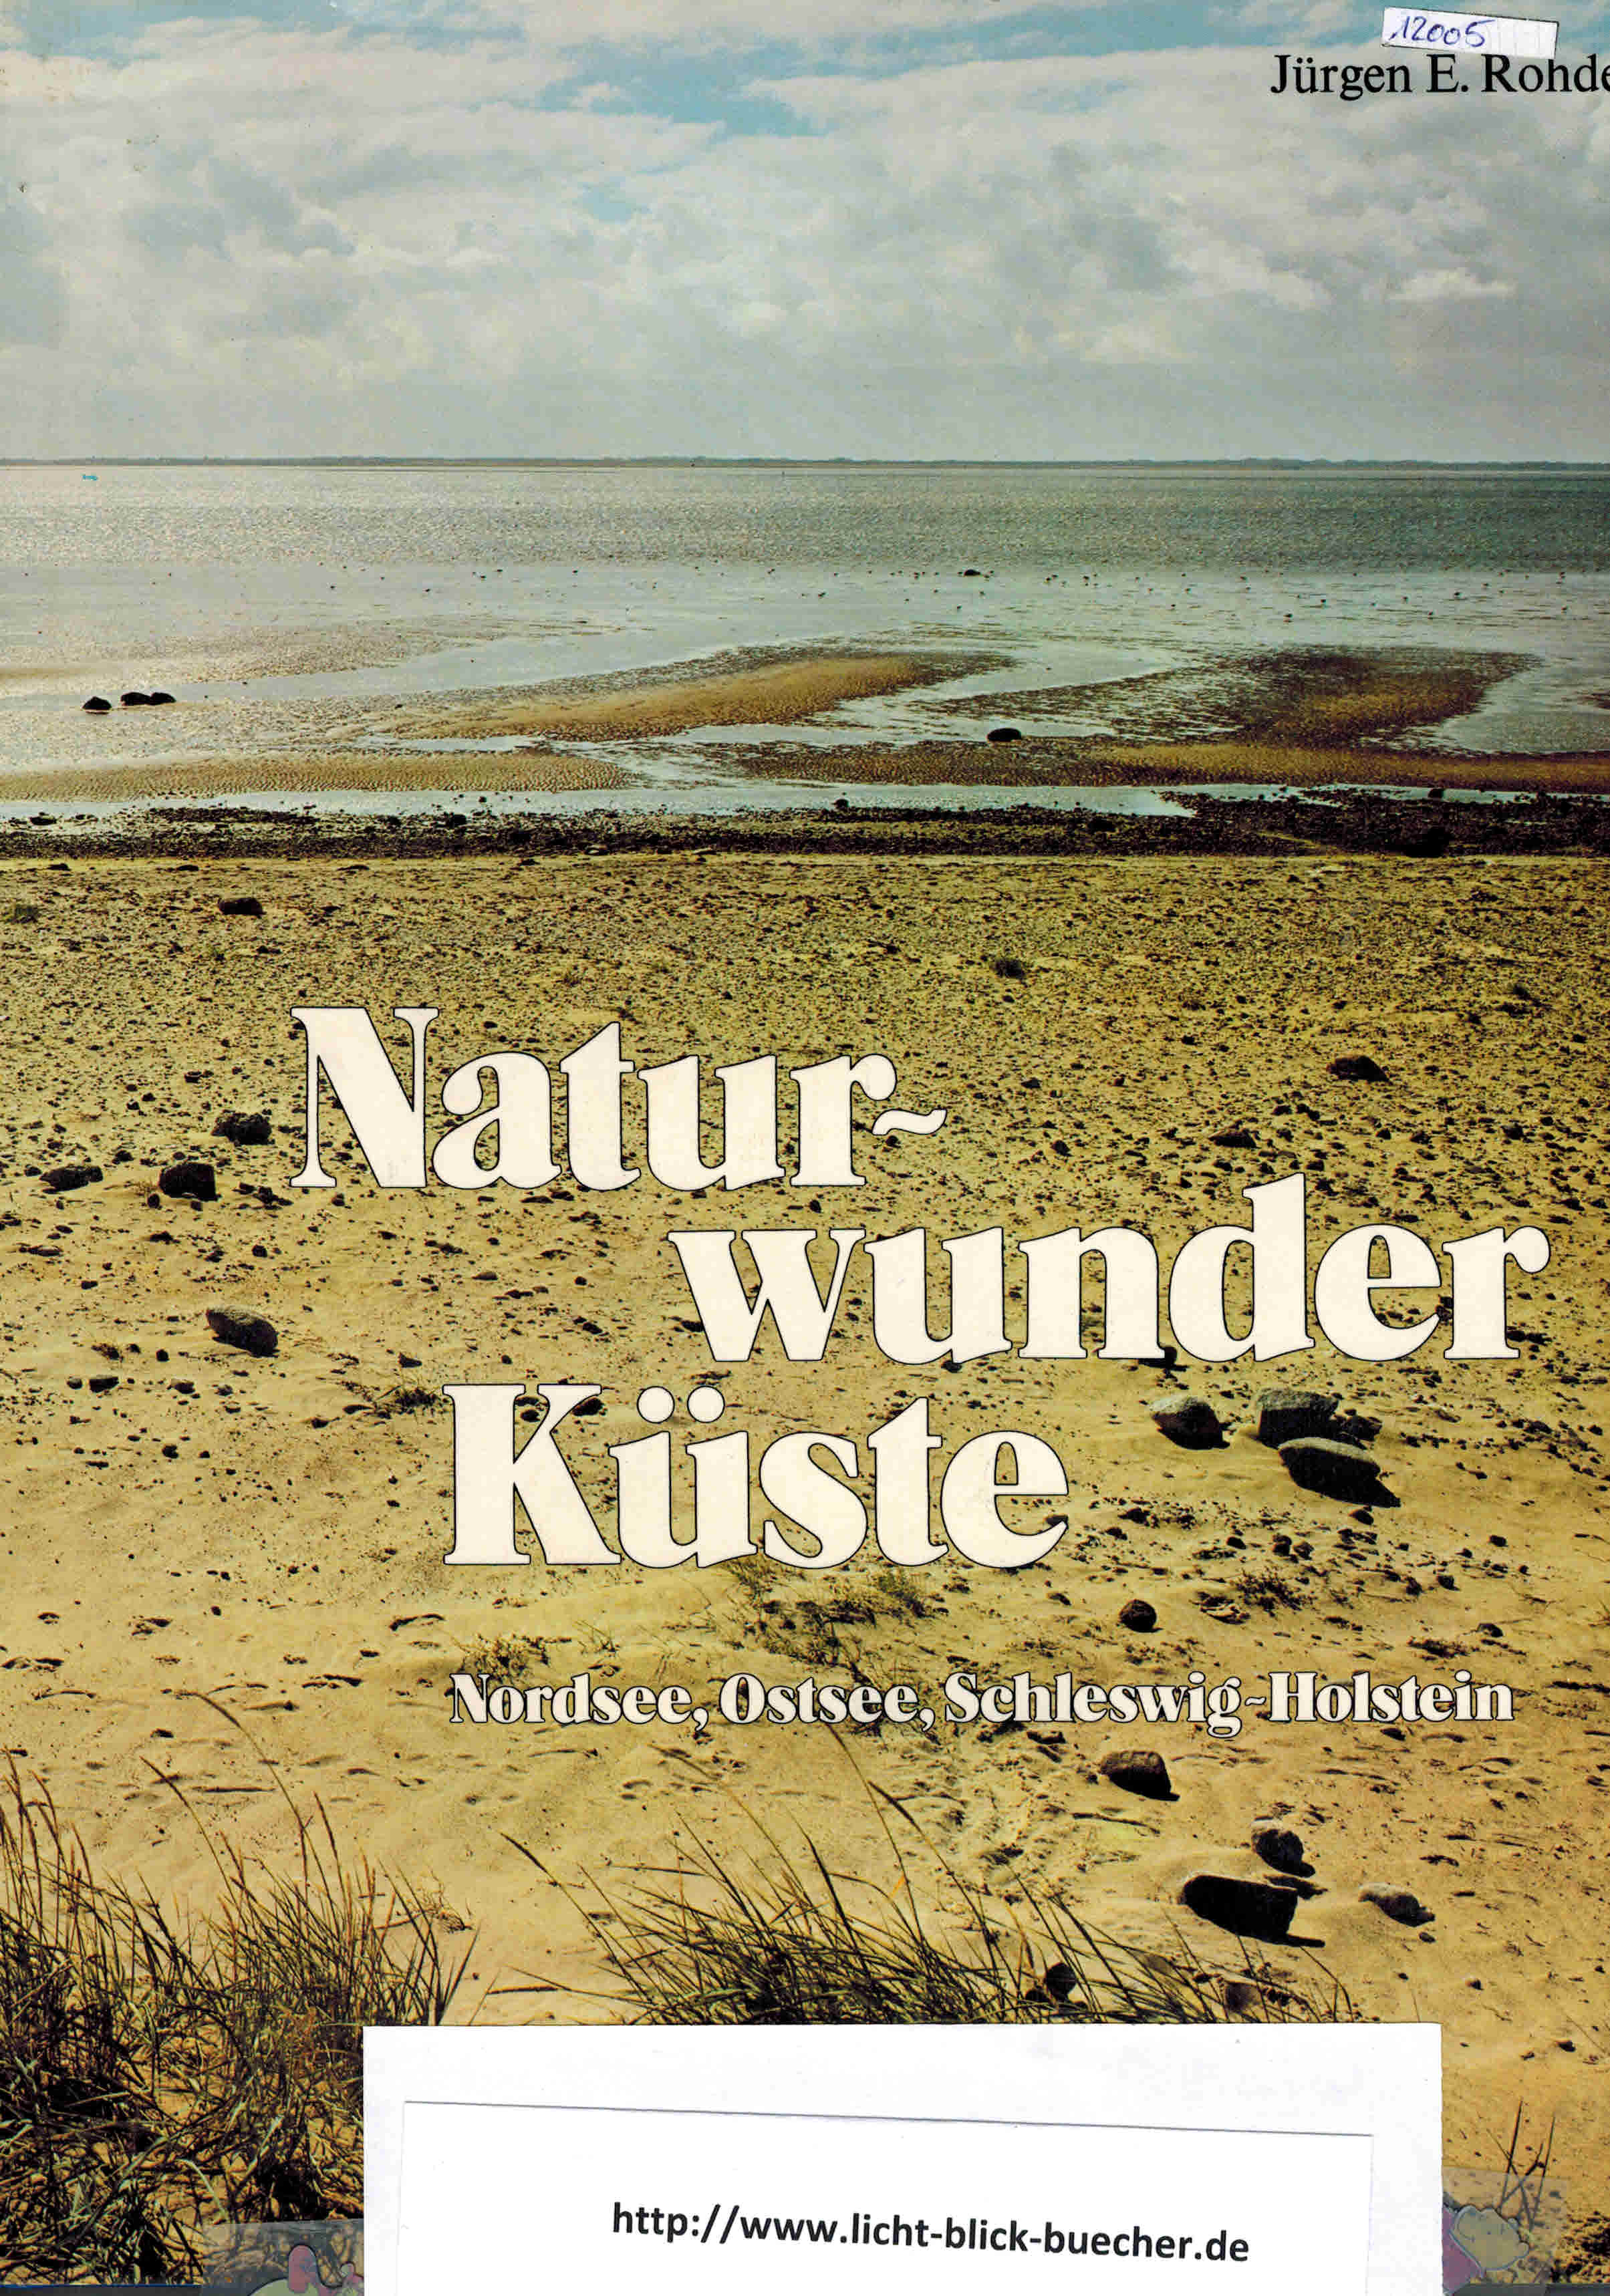 Naturwunder KuesteNordsee, Ostsee, Schleswig-HolsteinJuergen E. Rohde